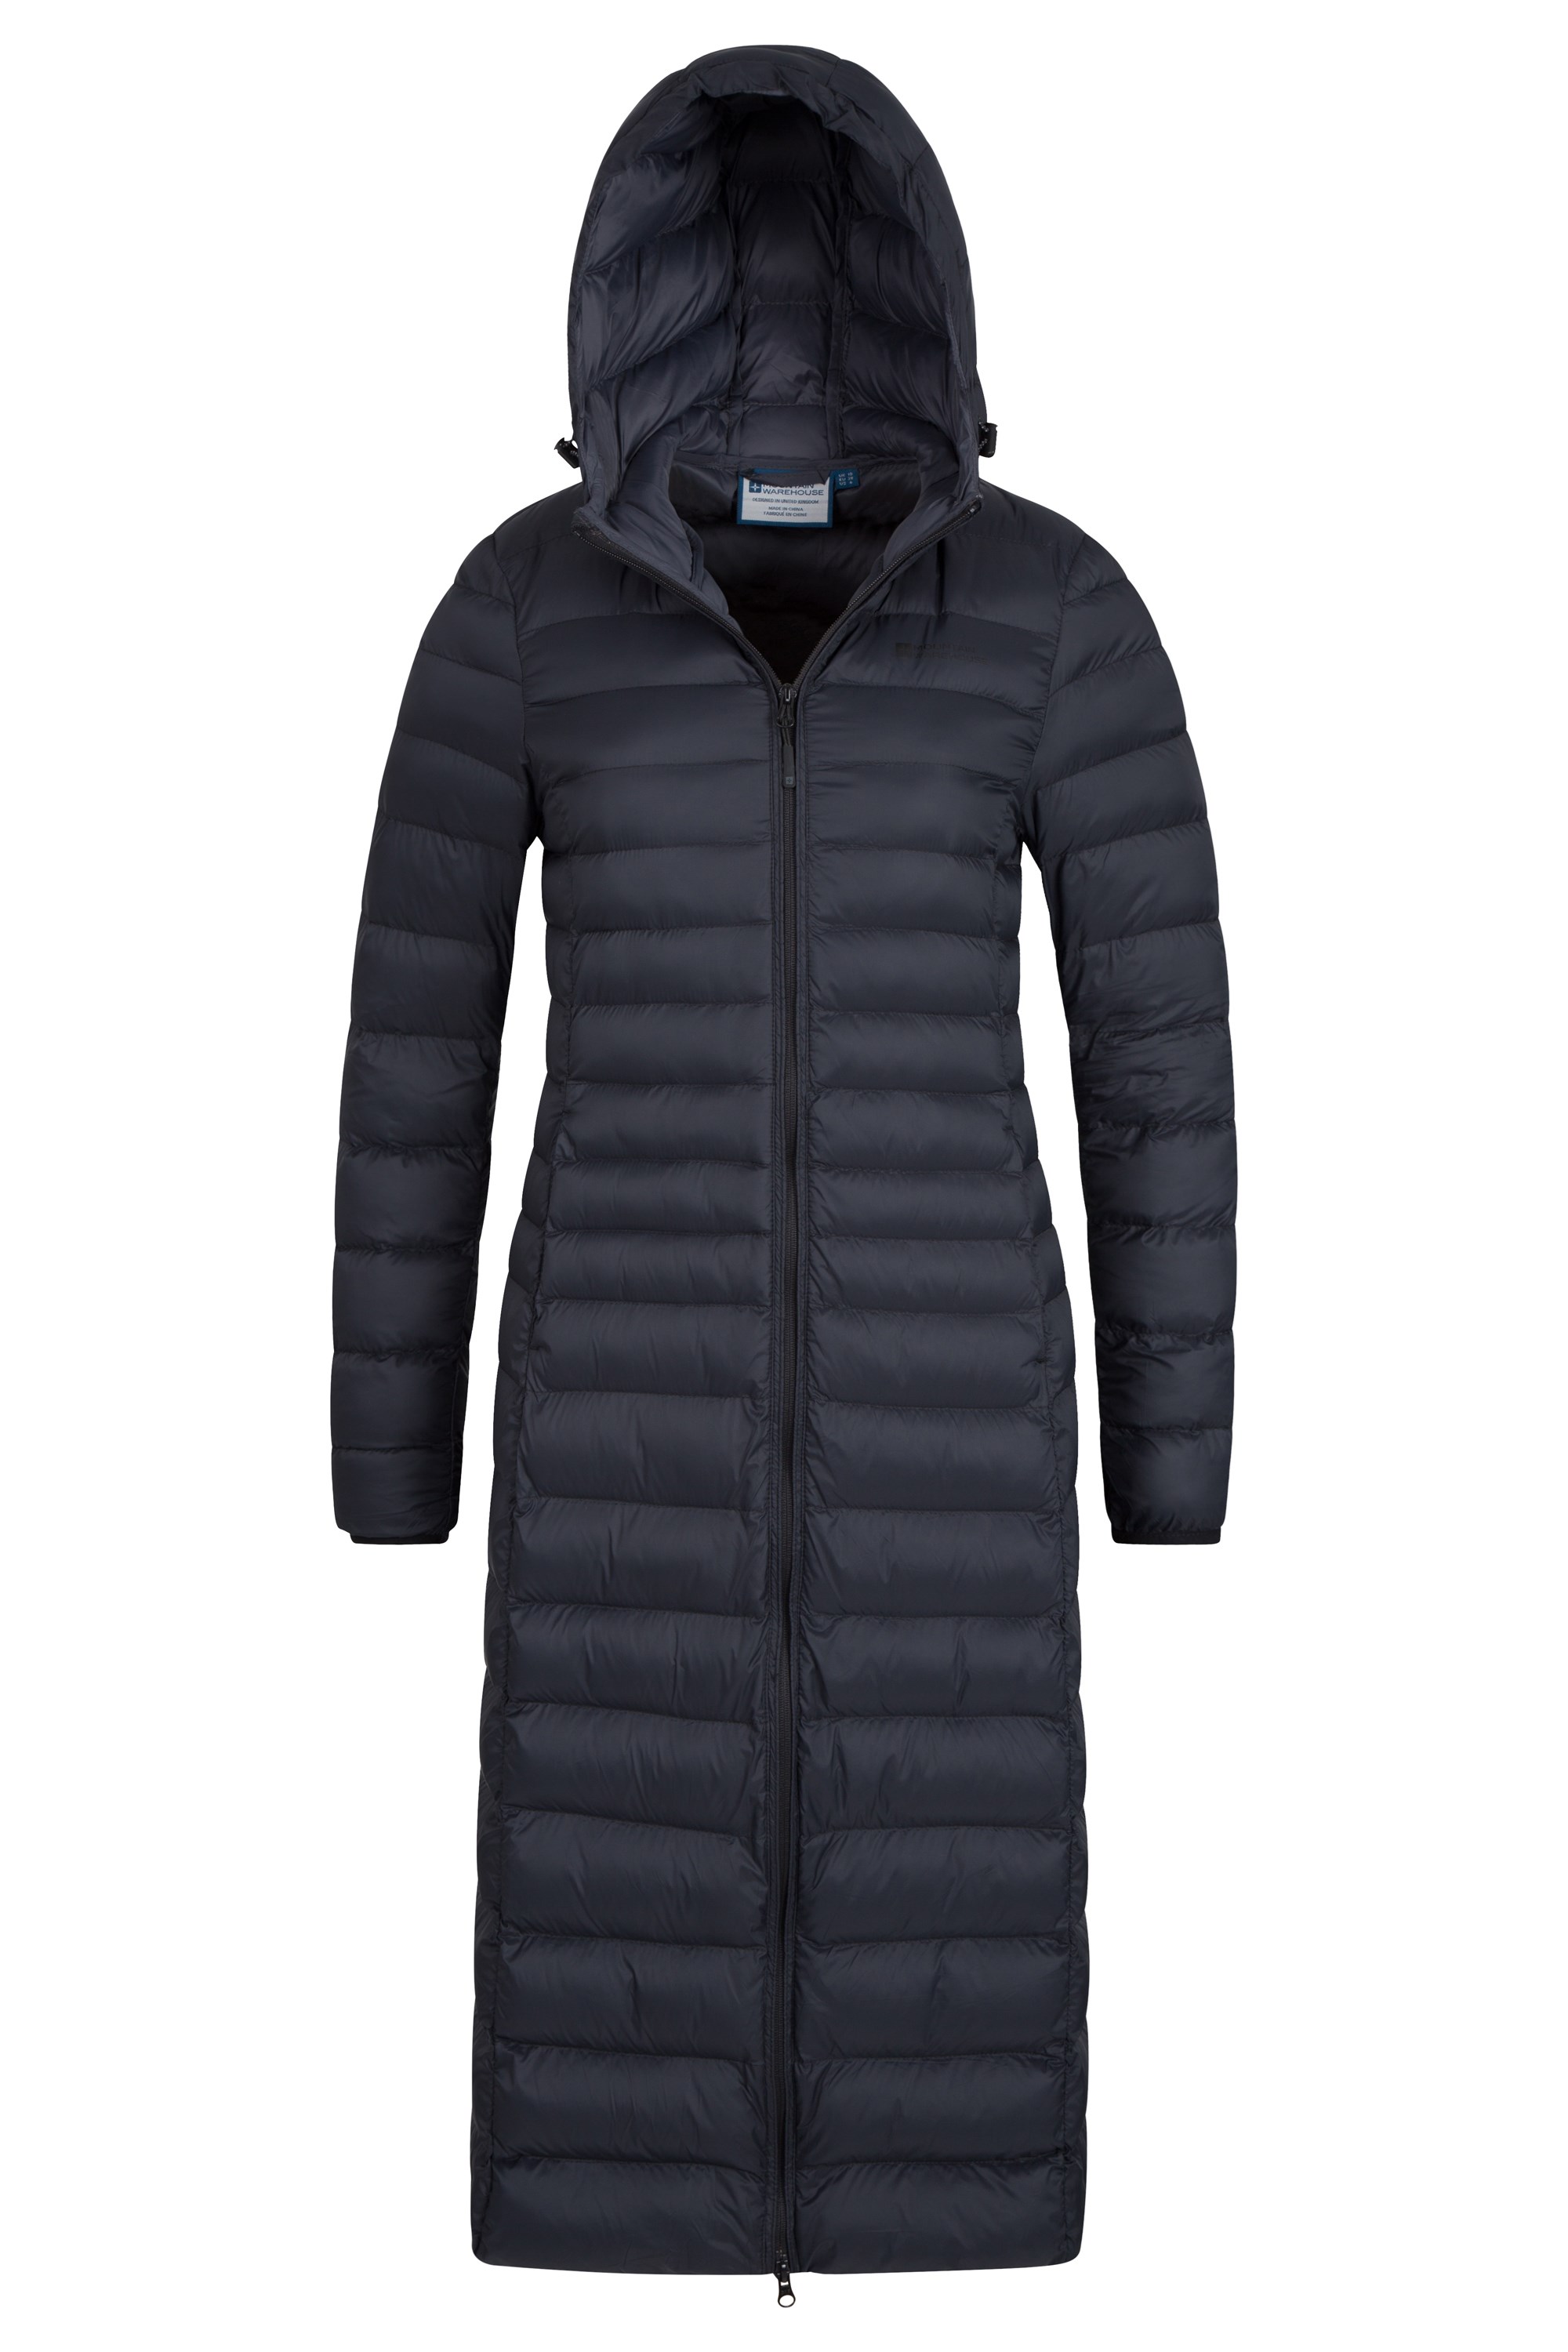 mountain warehouse womens coats